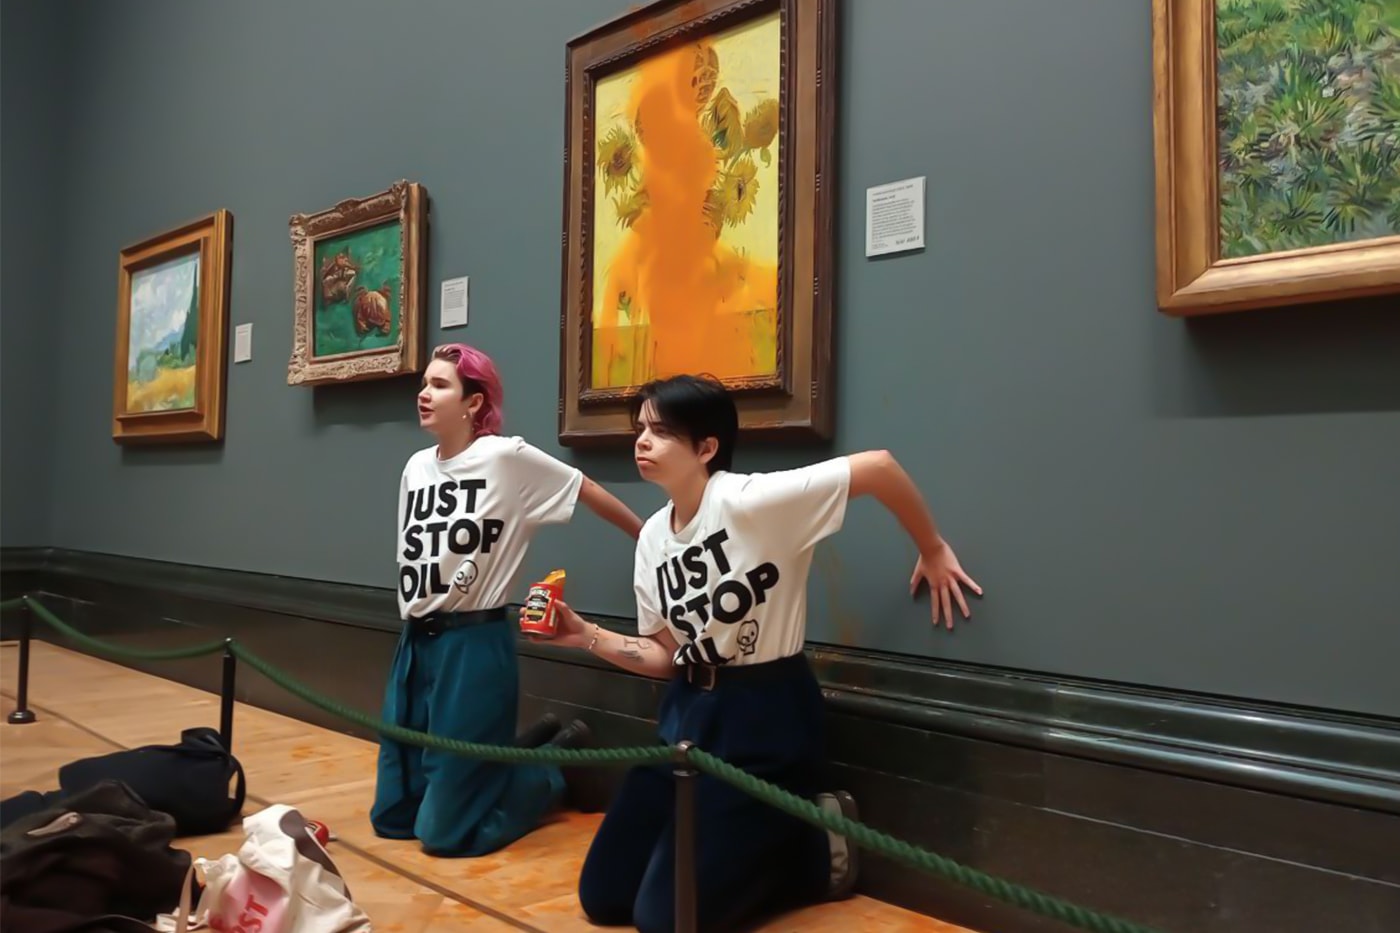 ゴッホの代表作 “ひまわり”にトマトスープをぶっかけた2人の若者が逮捕される Climate Activists Heinz Soup Van Gogh Sunflowers Art